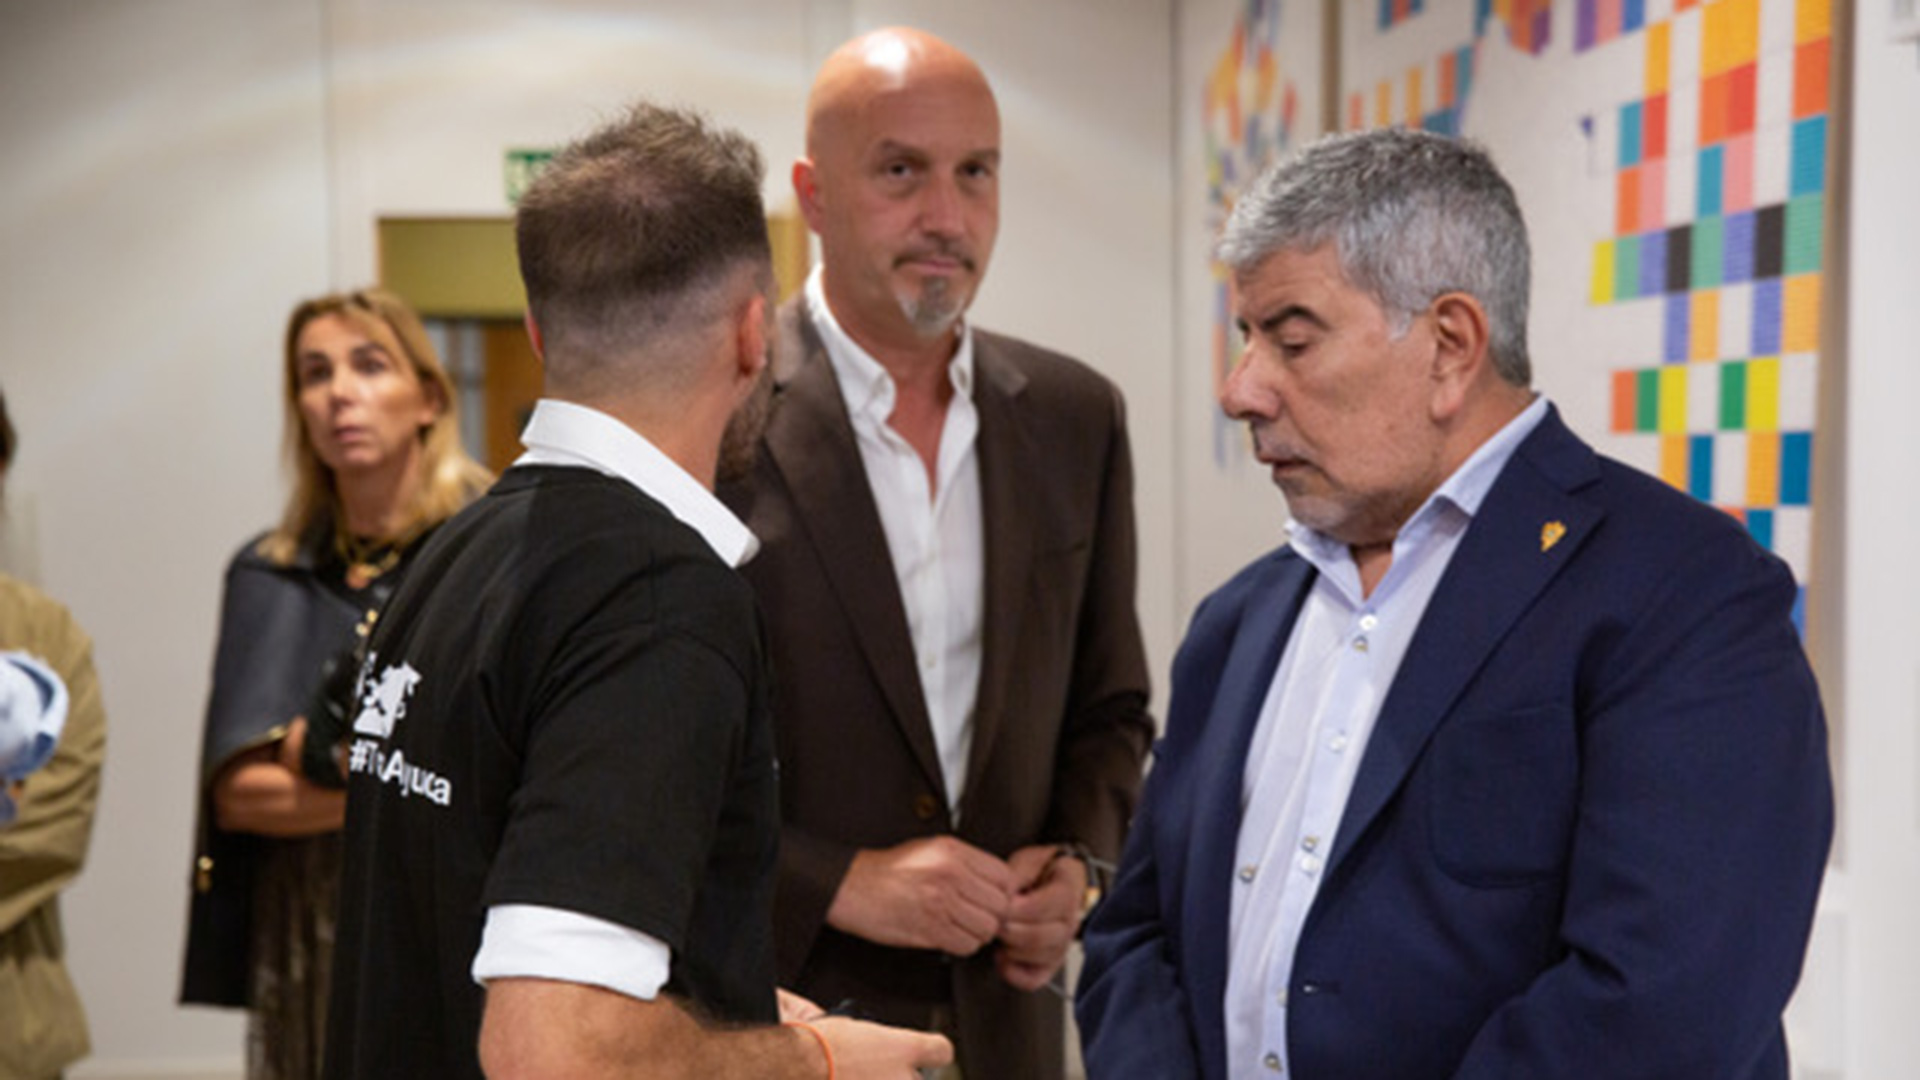 El vicepresidente del Club Deportivo Toledo, Miguel Jara, junto a Carlos Vázquez, director financiero de esa institución deportiva